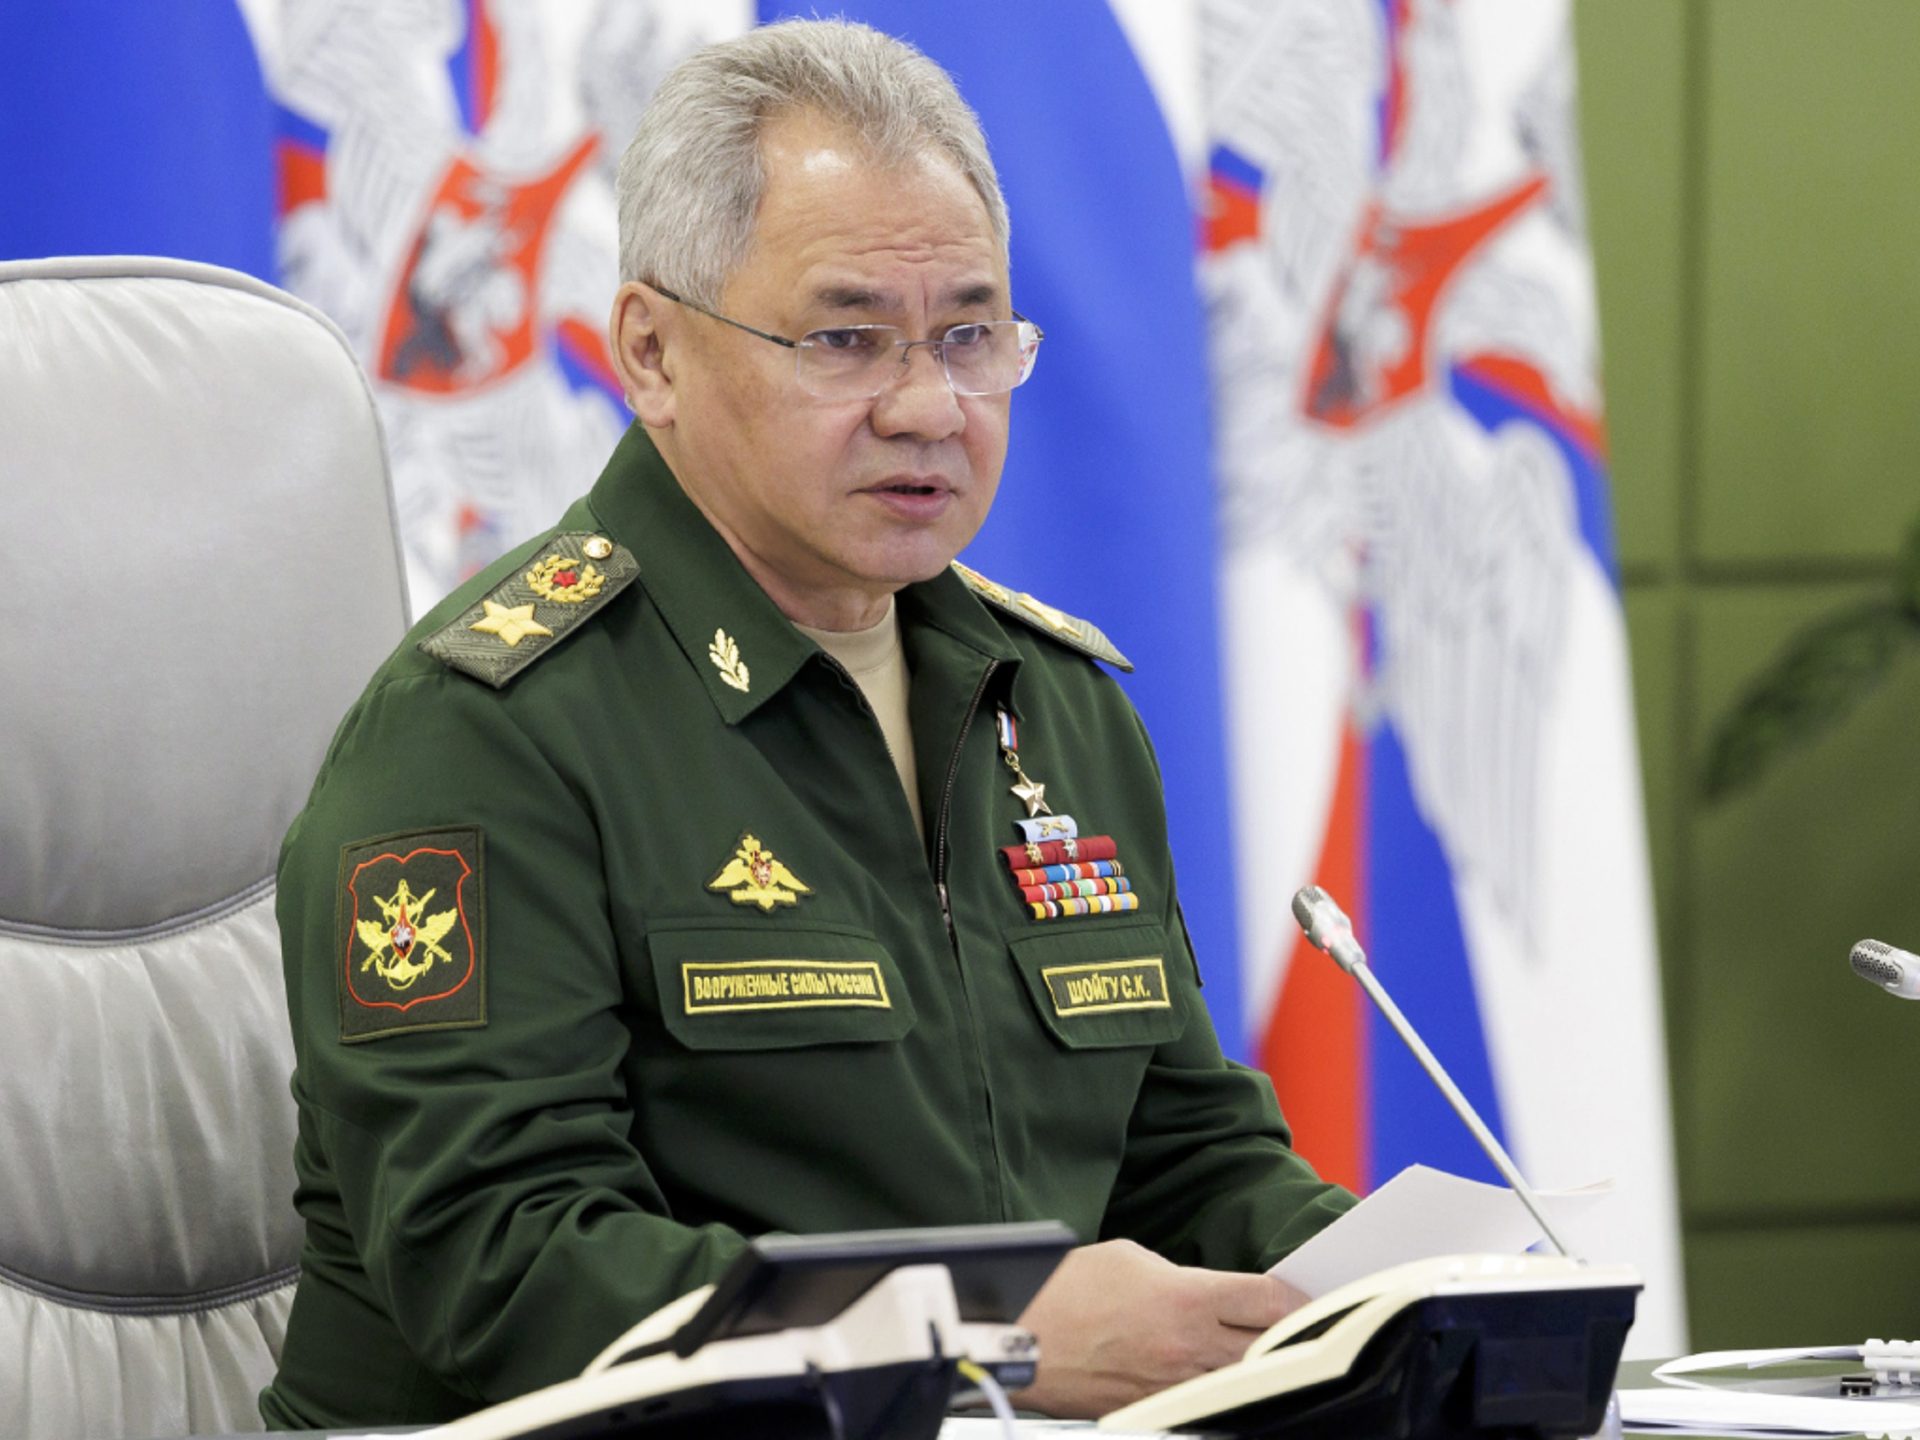 وزير الدفاع الروسي يتهم الغرب بمحاولة مد نطاق حرب أوكرانيا | أخبار – البوكس نيوز